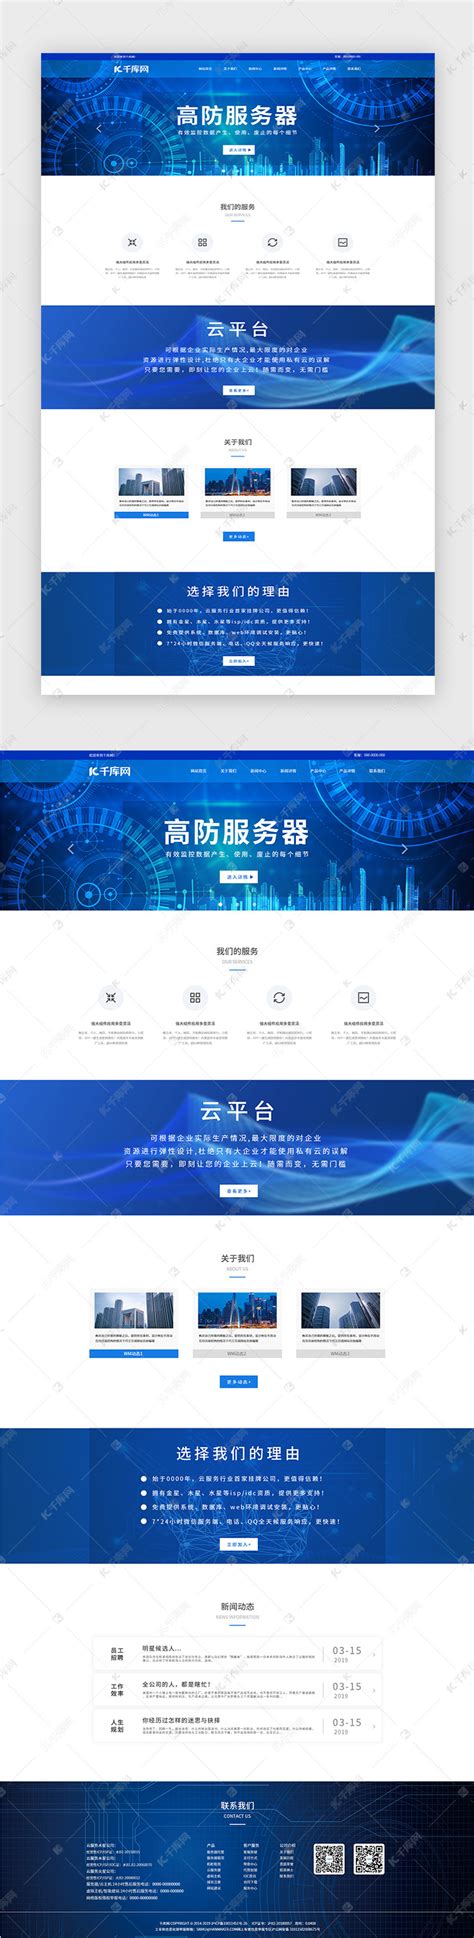 蓝色安全服务企业网站首页ui界面设计素材-千库网